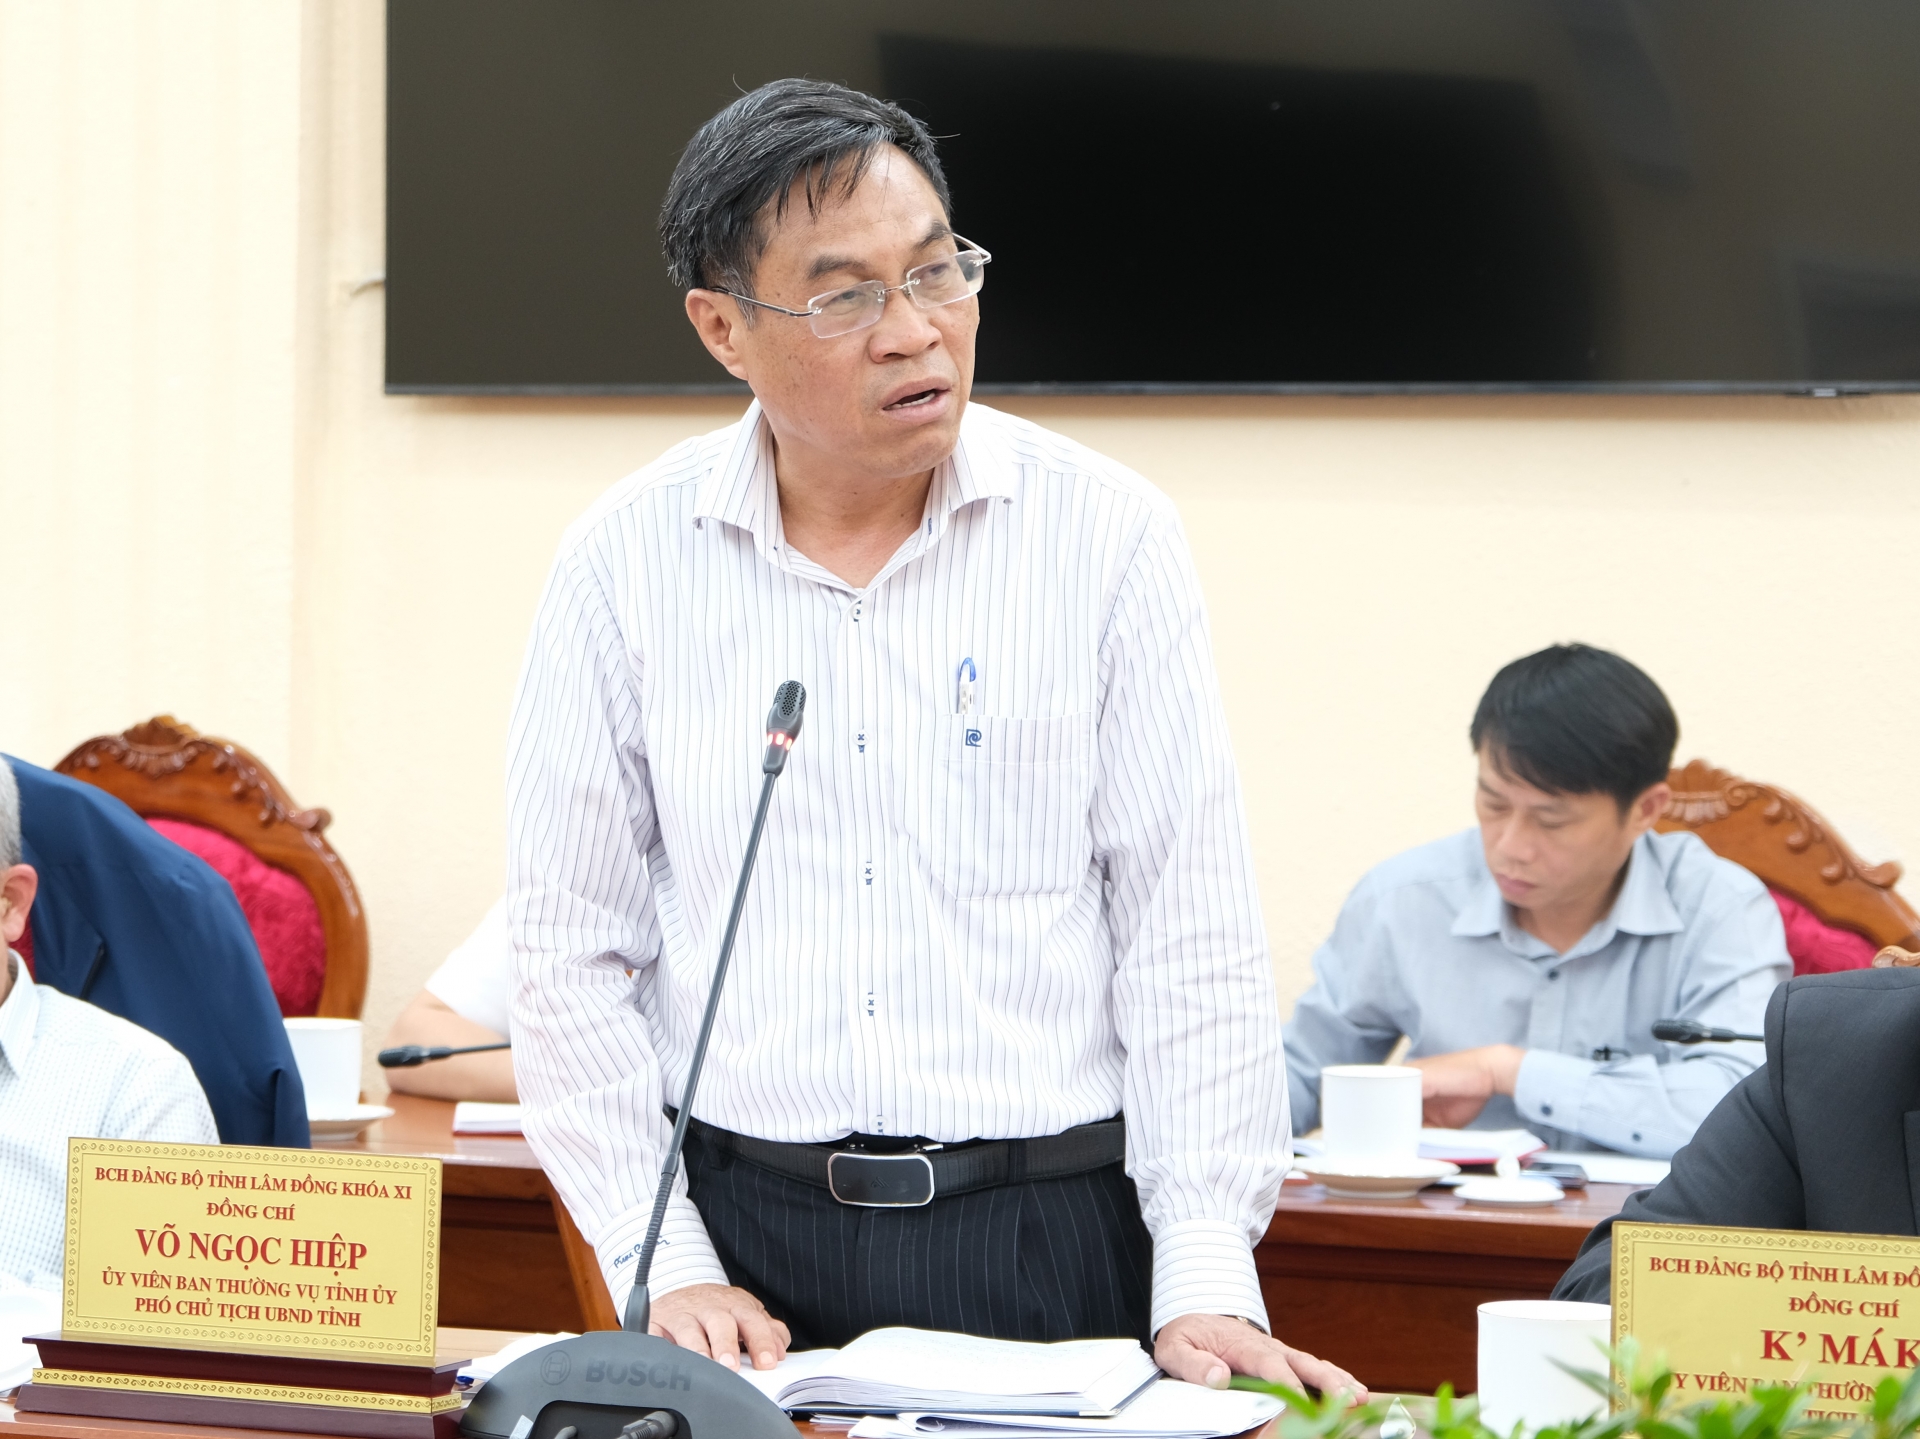 Phó Chủ tịch UBND tỉnh Lâm Đồng Võ Ngọc Hiệp trình bày Báo cáo tóm tắt Tình hình triển khai thực hiện Nghị quyết số 52-NQ/TW và Nghị quyết số 23-NQ/TW của Bộ Chính trị trên địa bàn tỉnh